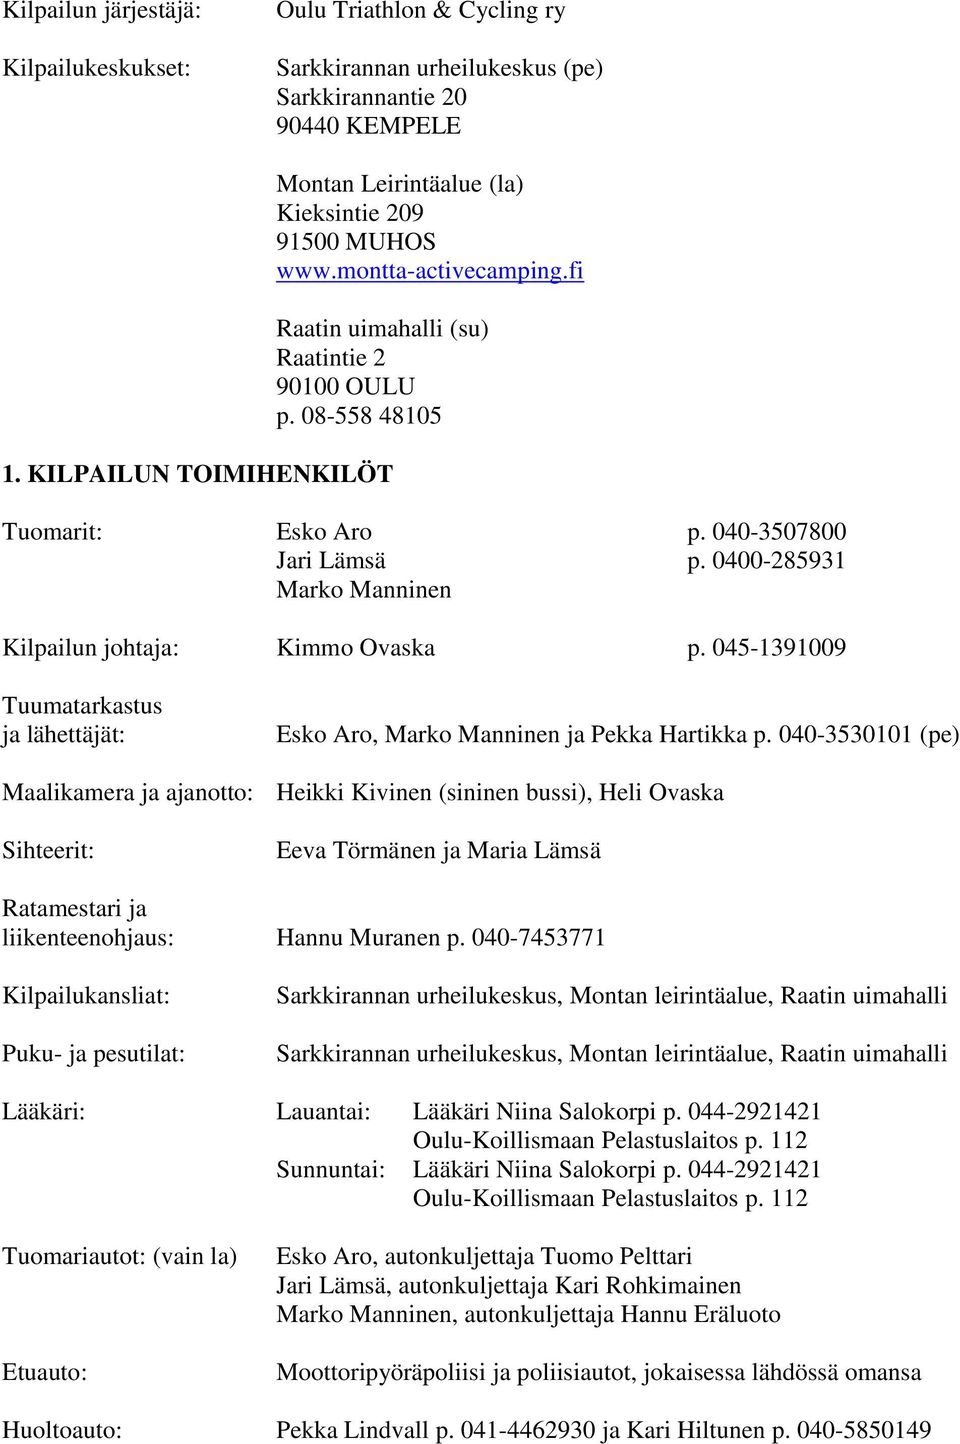 0400-285931 Marko Manninen Kilpailun johtaja: Kimmo Ovaska p. 045-1391009 Tuumatarkastus ja lähettäjät: Esko Aro, Marko Manninen ja Pekka Hartikka p.